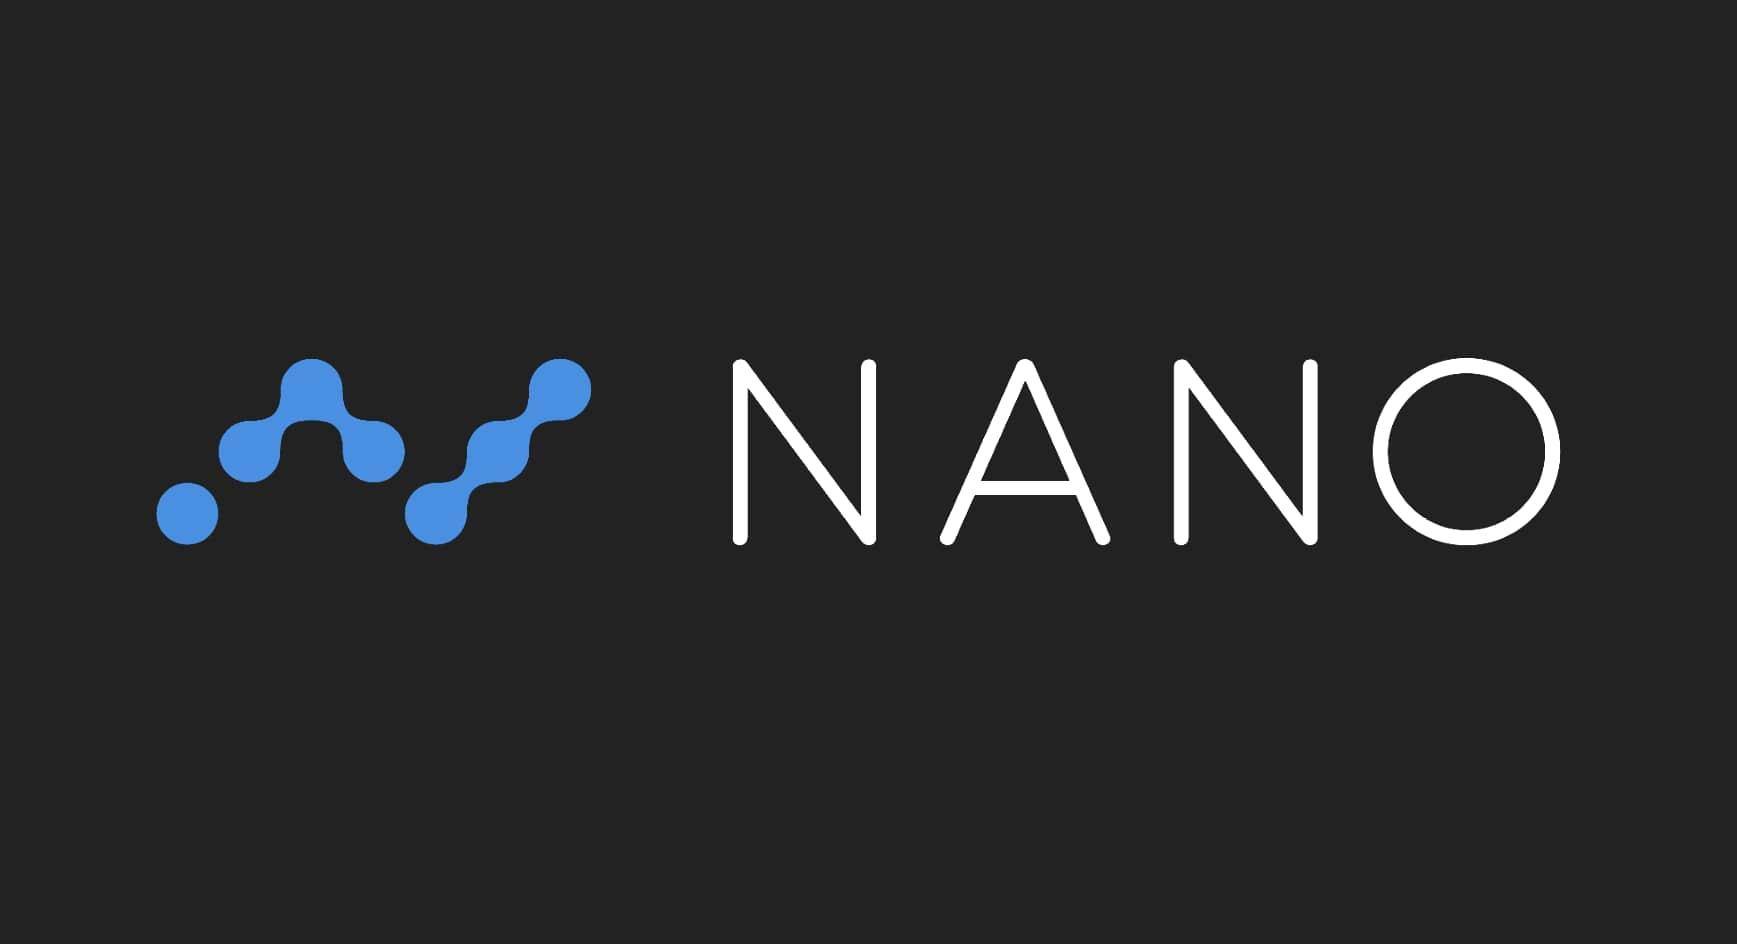 Is Nano the Next Hot Crypto?